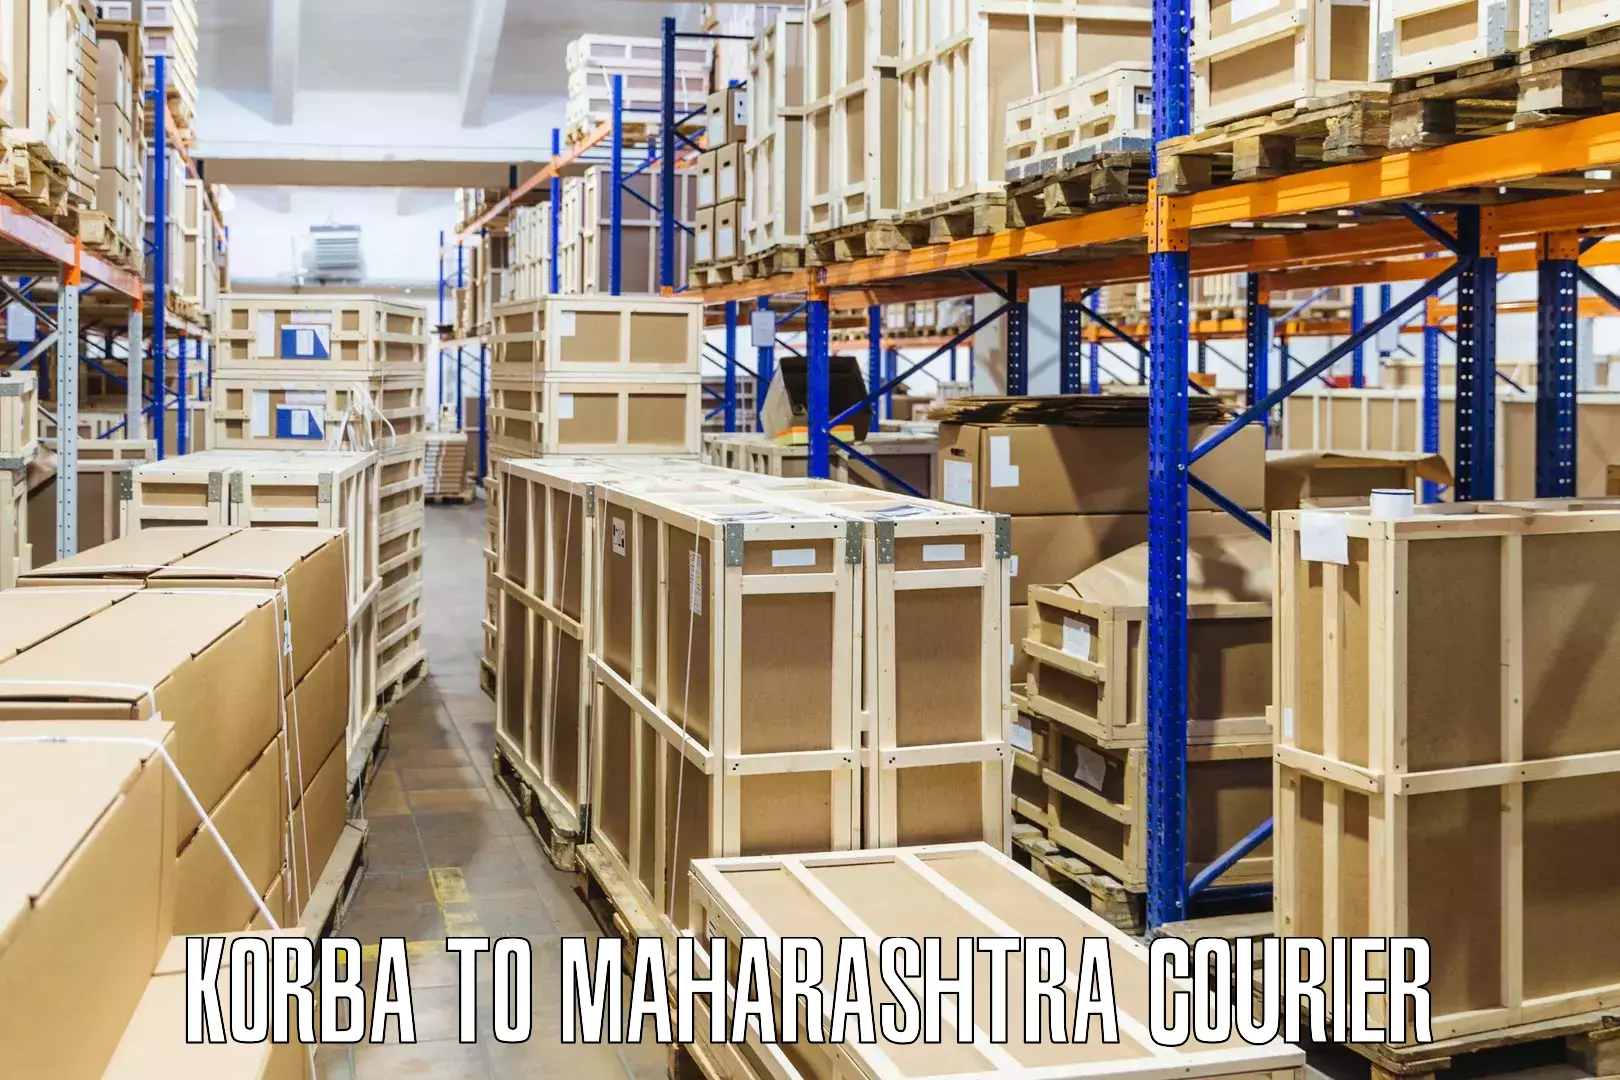 Express mail solutions Korba to Maharashtra